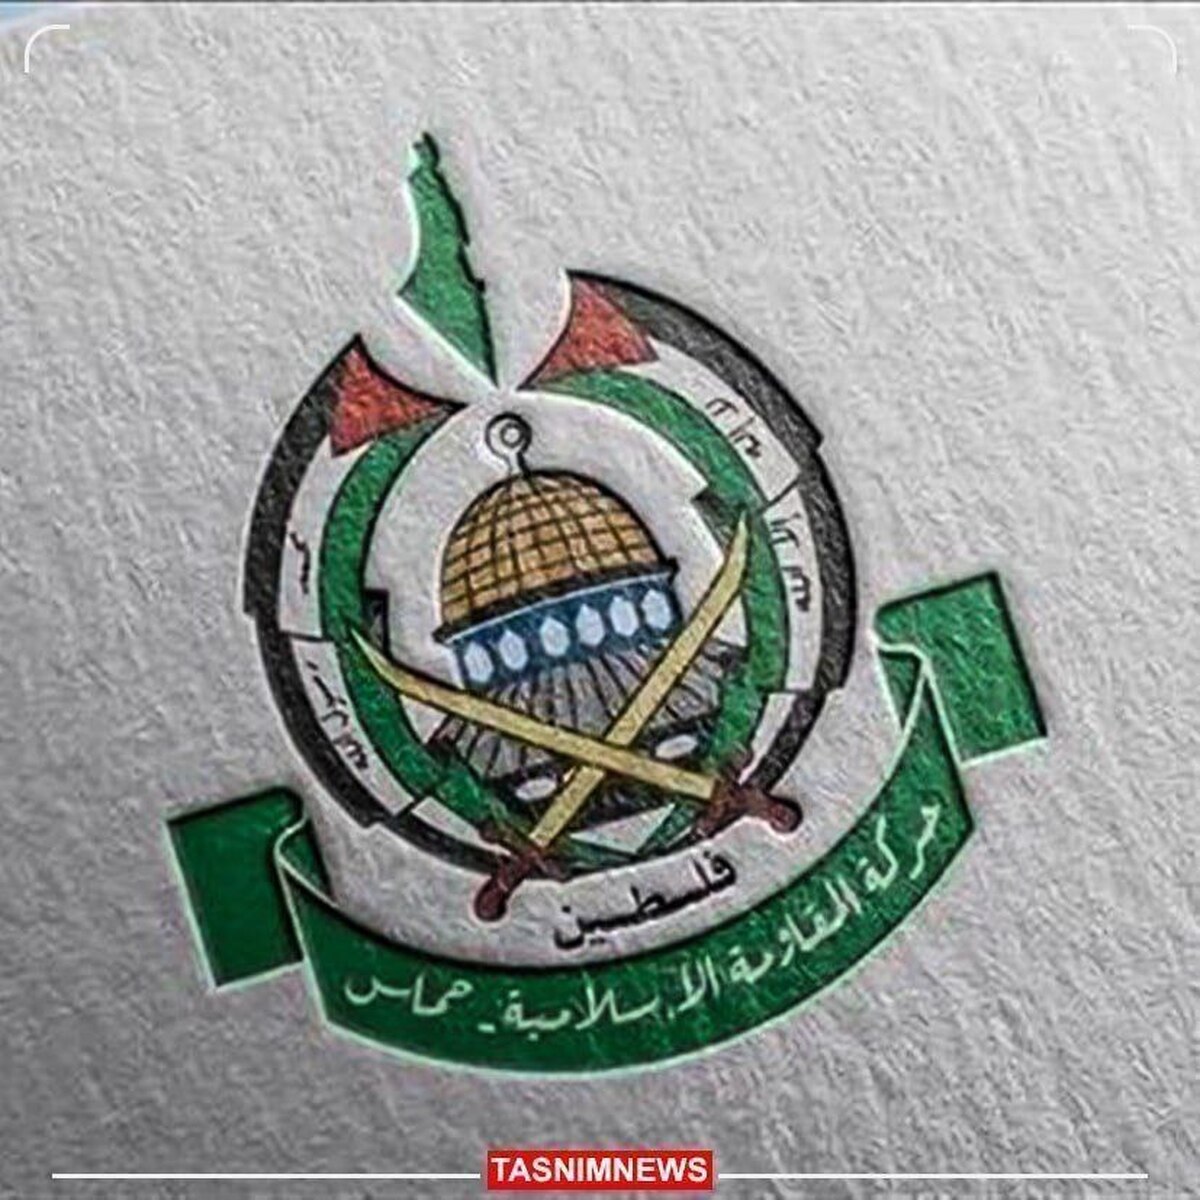 یک رهبر حماس: به دنبال توقف کامل هستیم